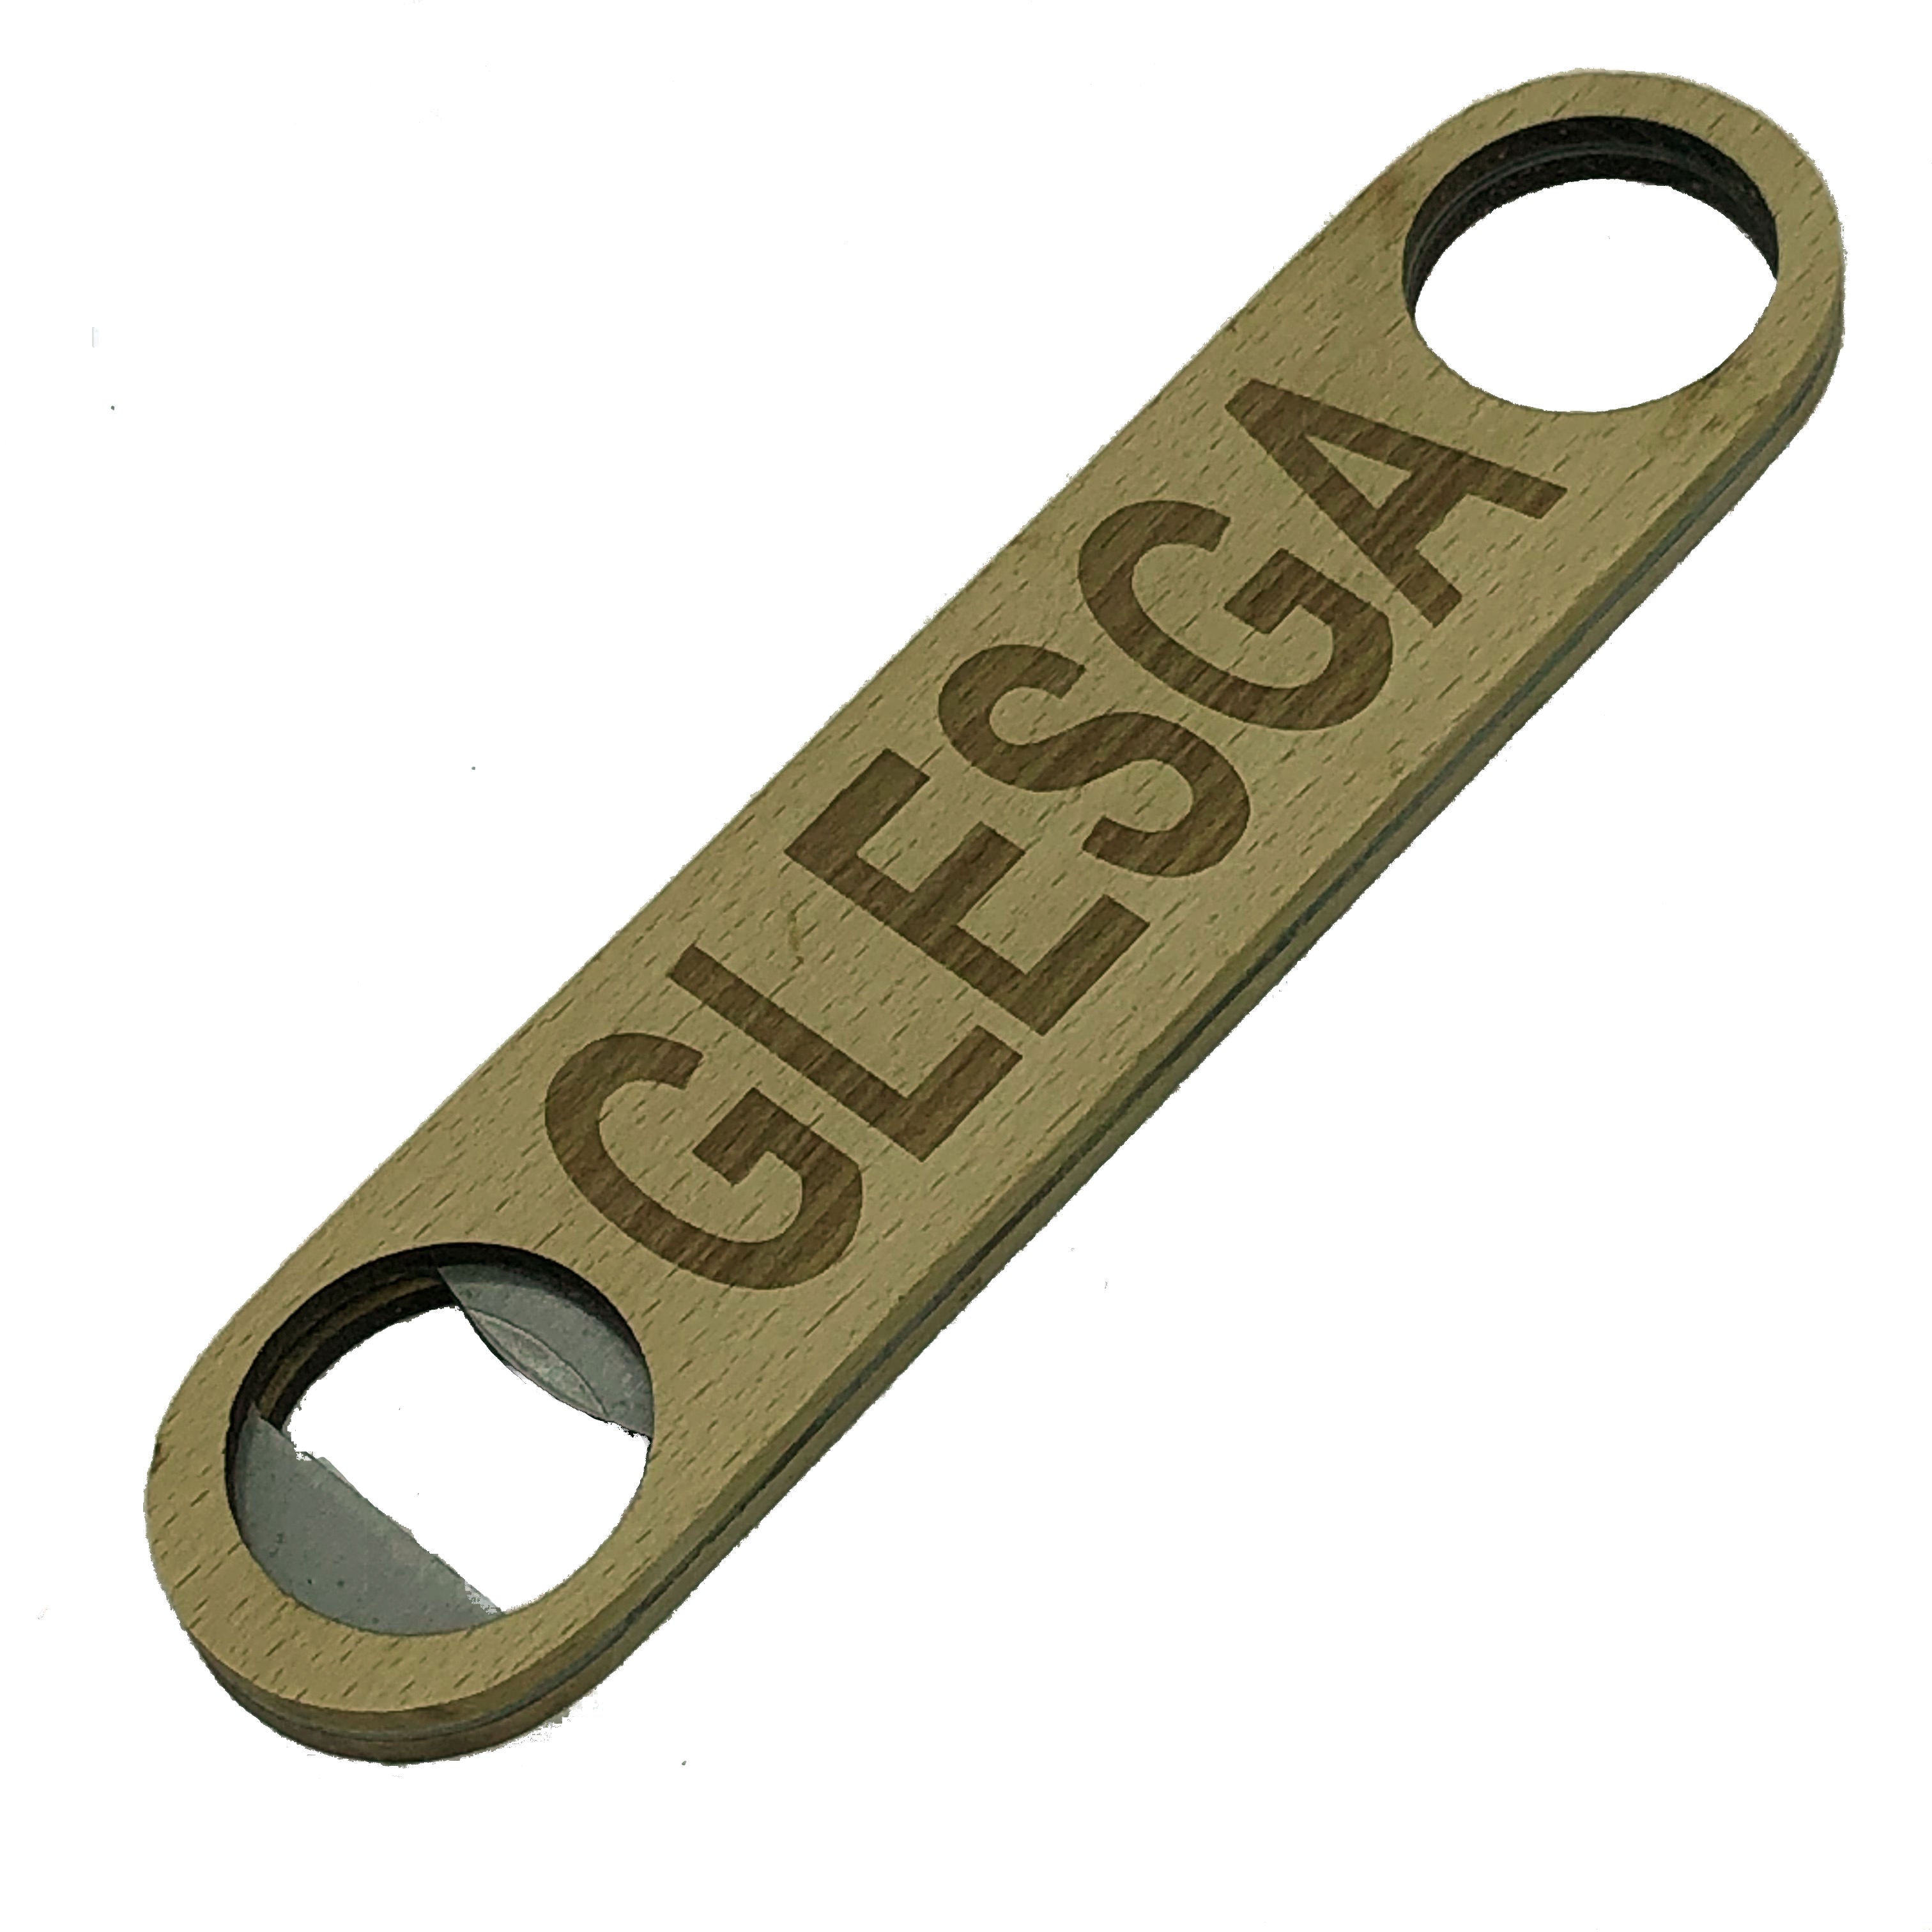 Wooden bottle opener gift - Scottish dialect - Glesga